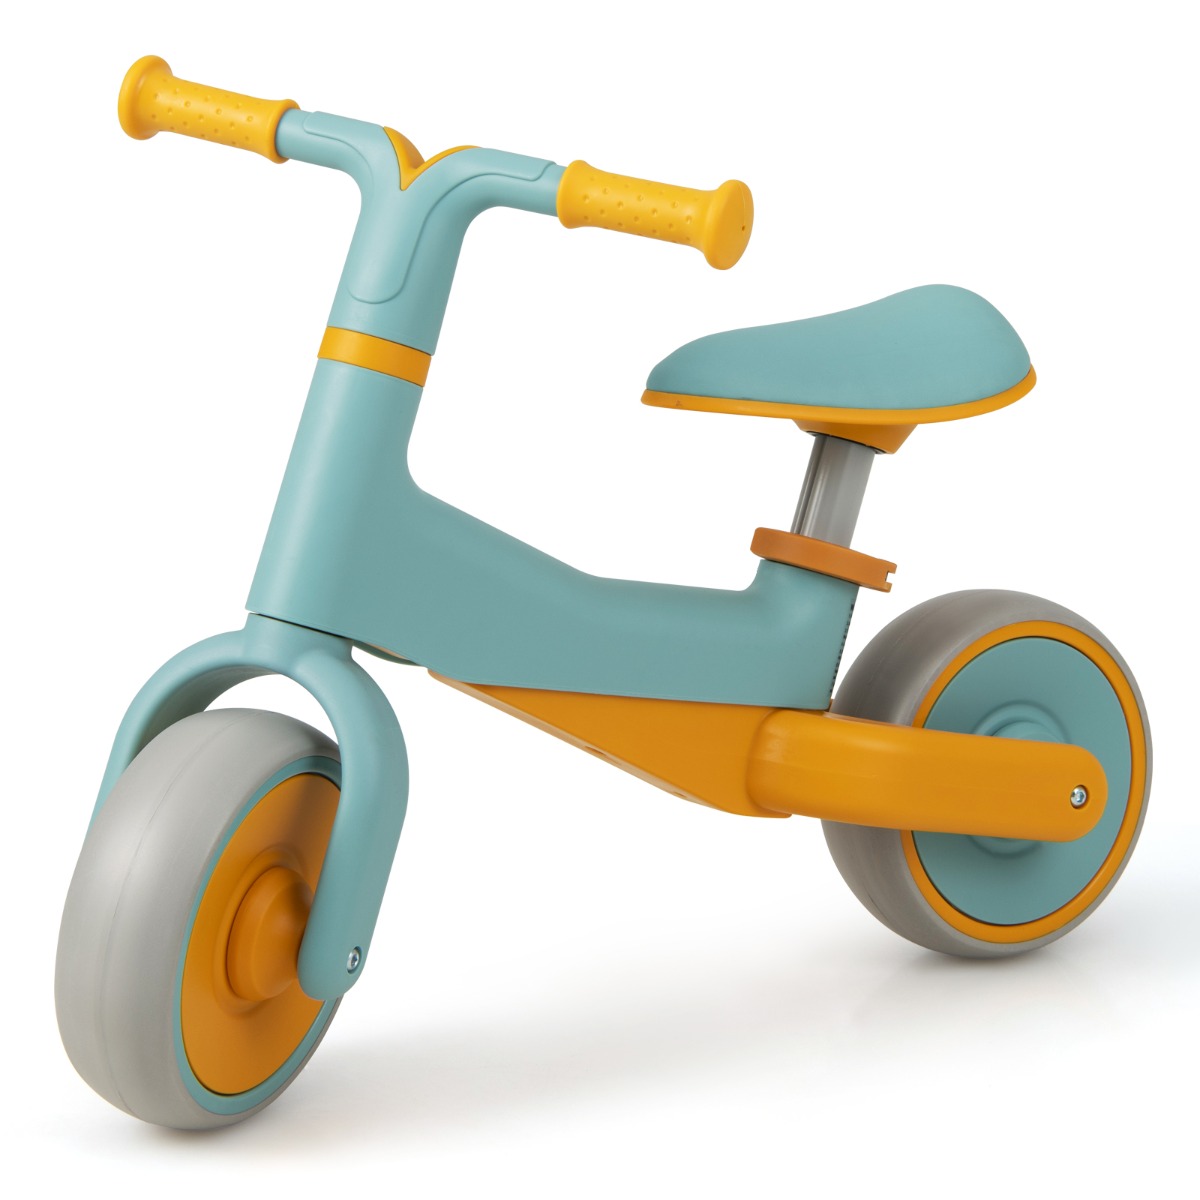 AX Giocattoli Triciclo Bambini Pedali Ruote Multicolore Plastica